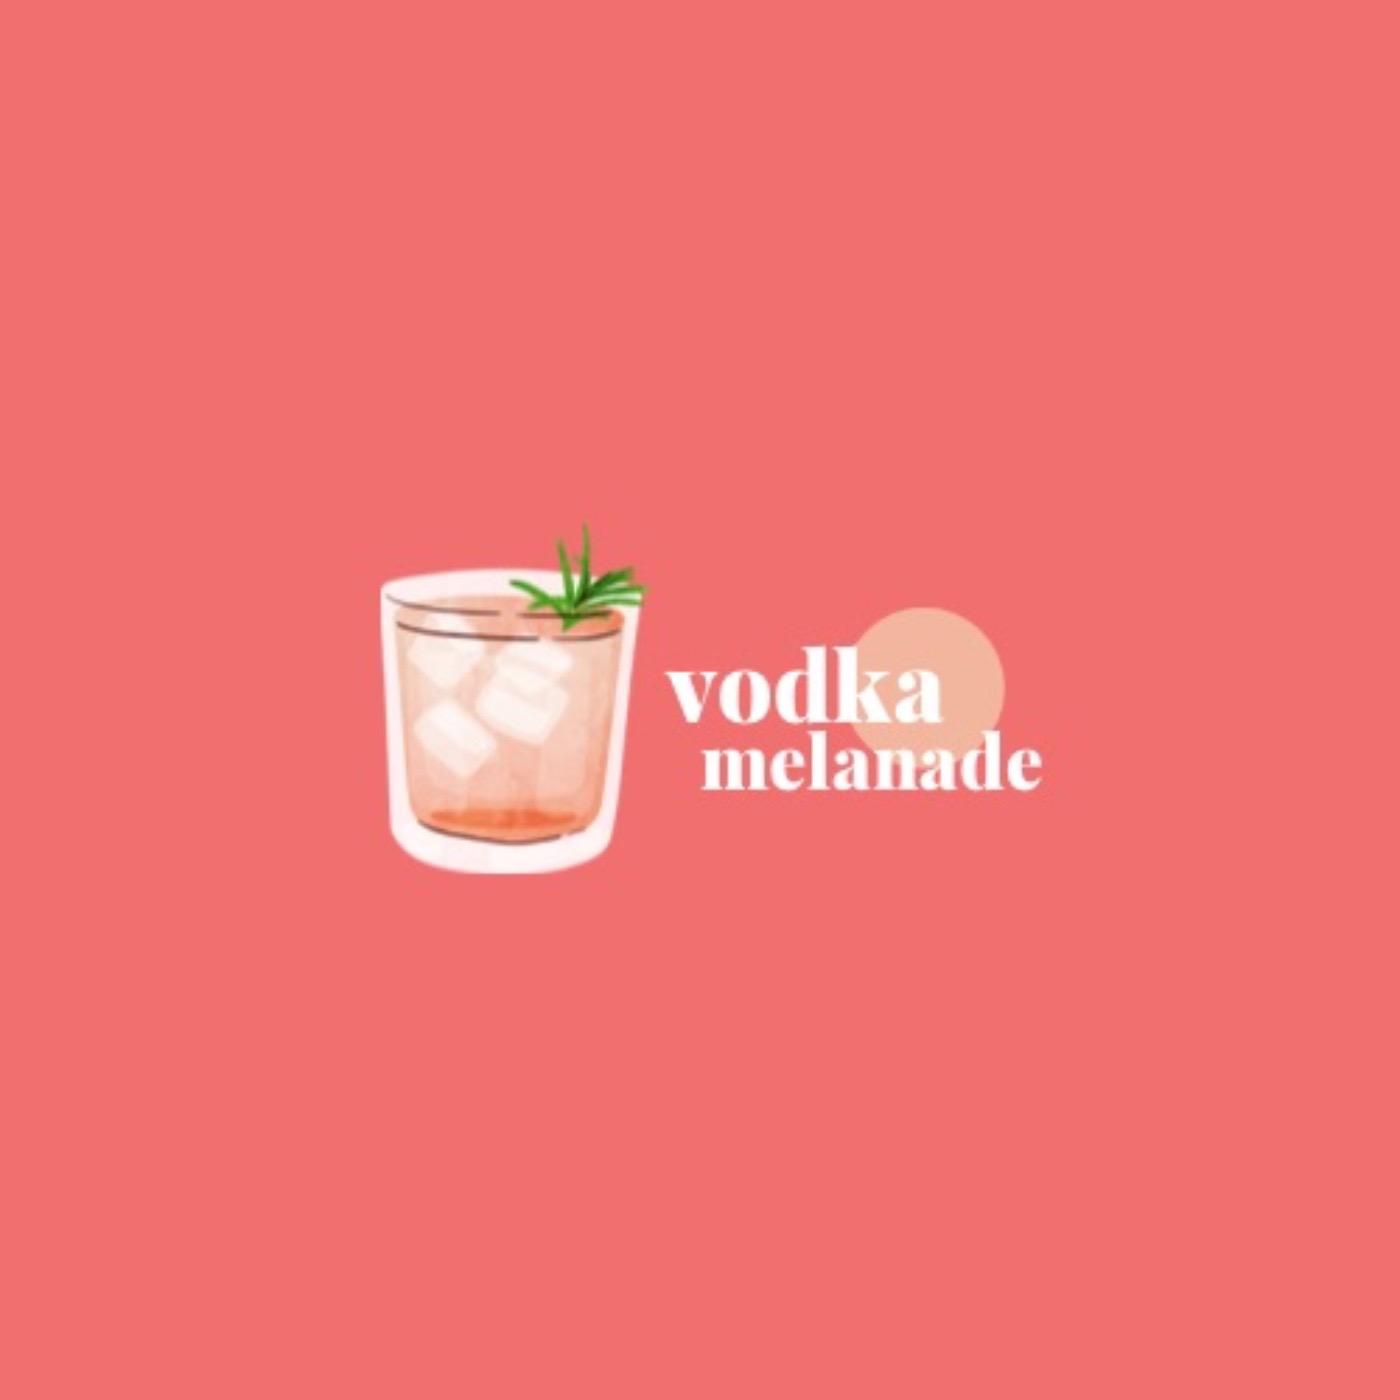 Vodka Melanade